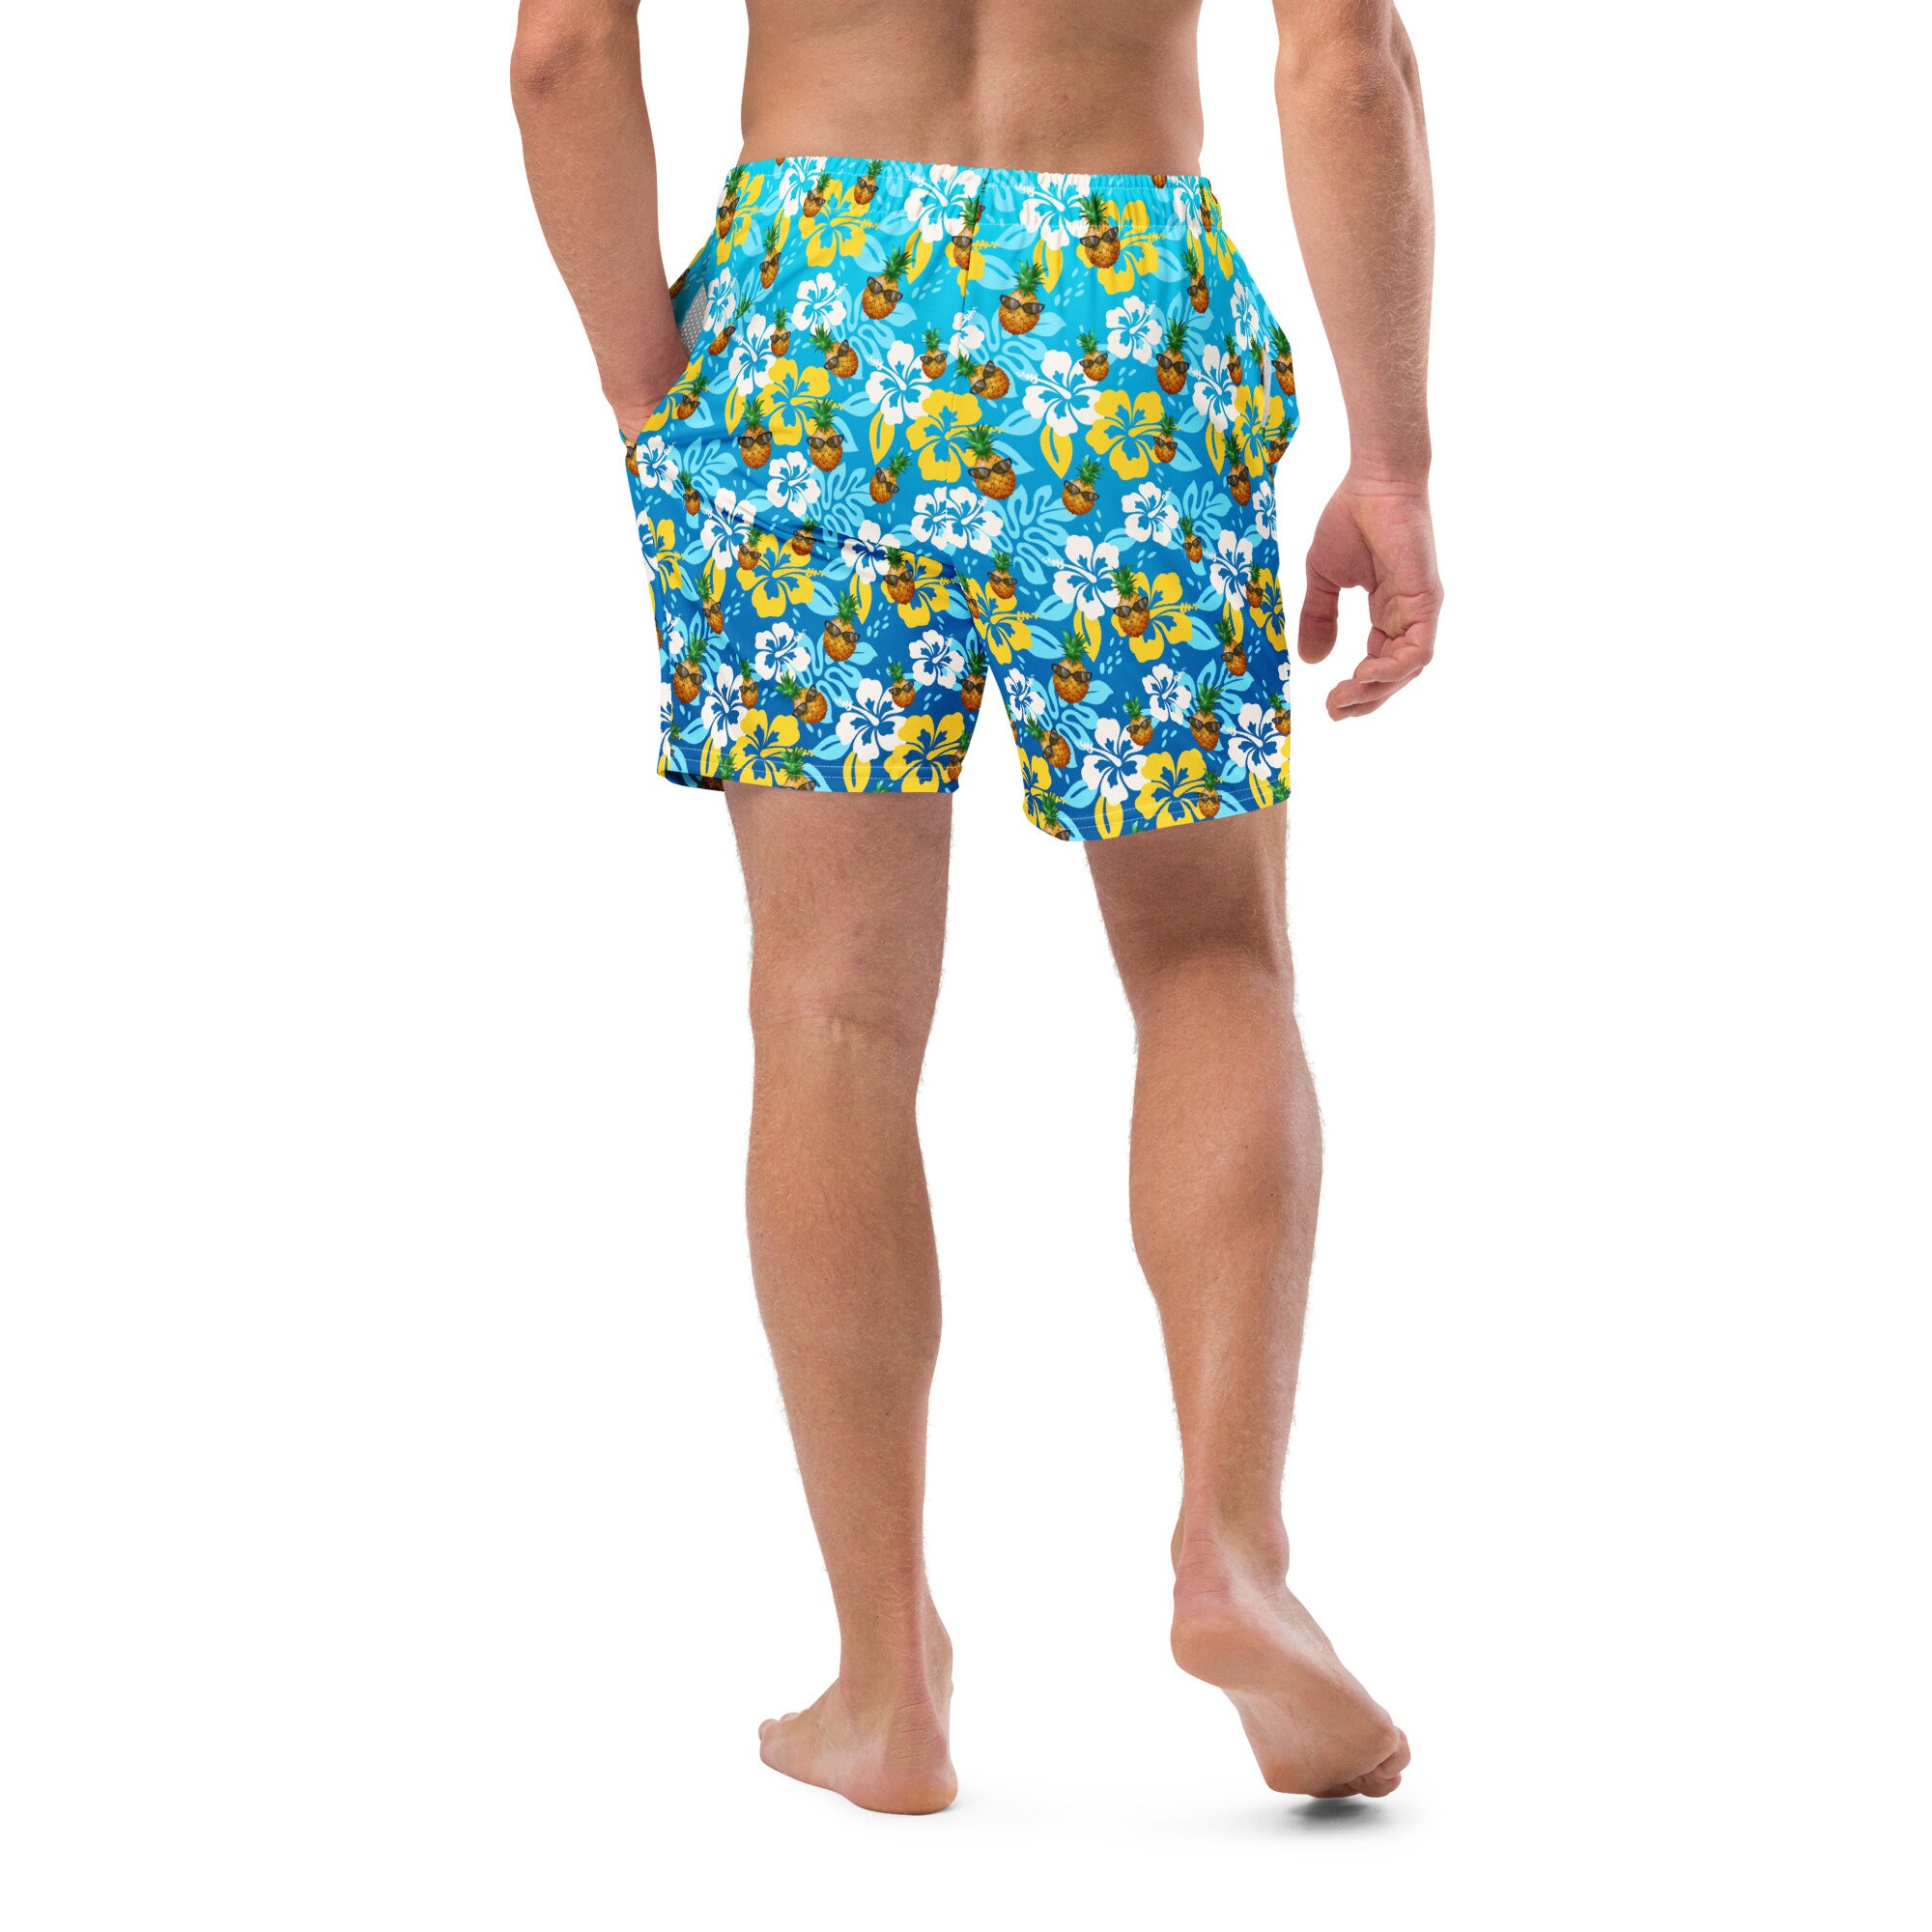 Men's Swim Trunks Swimsuits Bathing Suit Shorts, Cool Fruit Custom ...